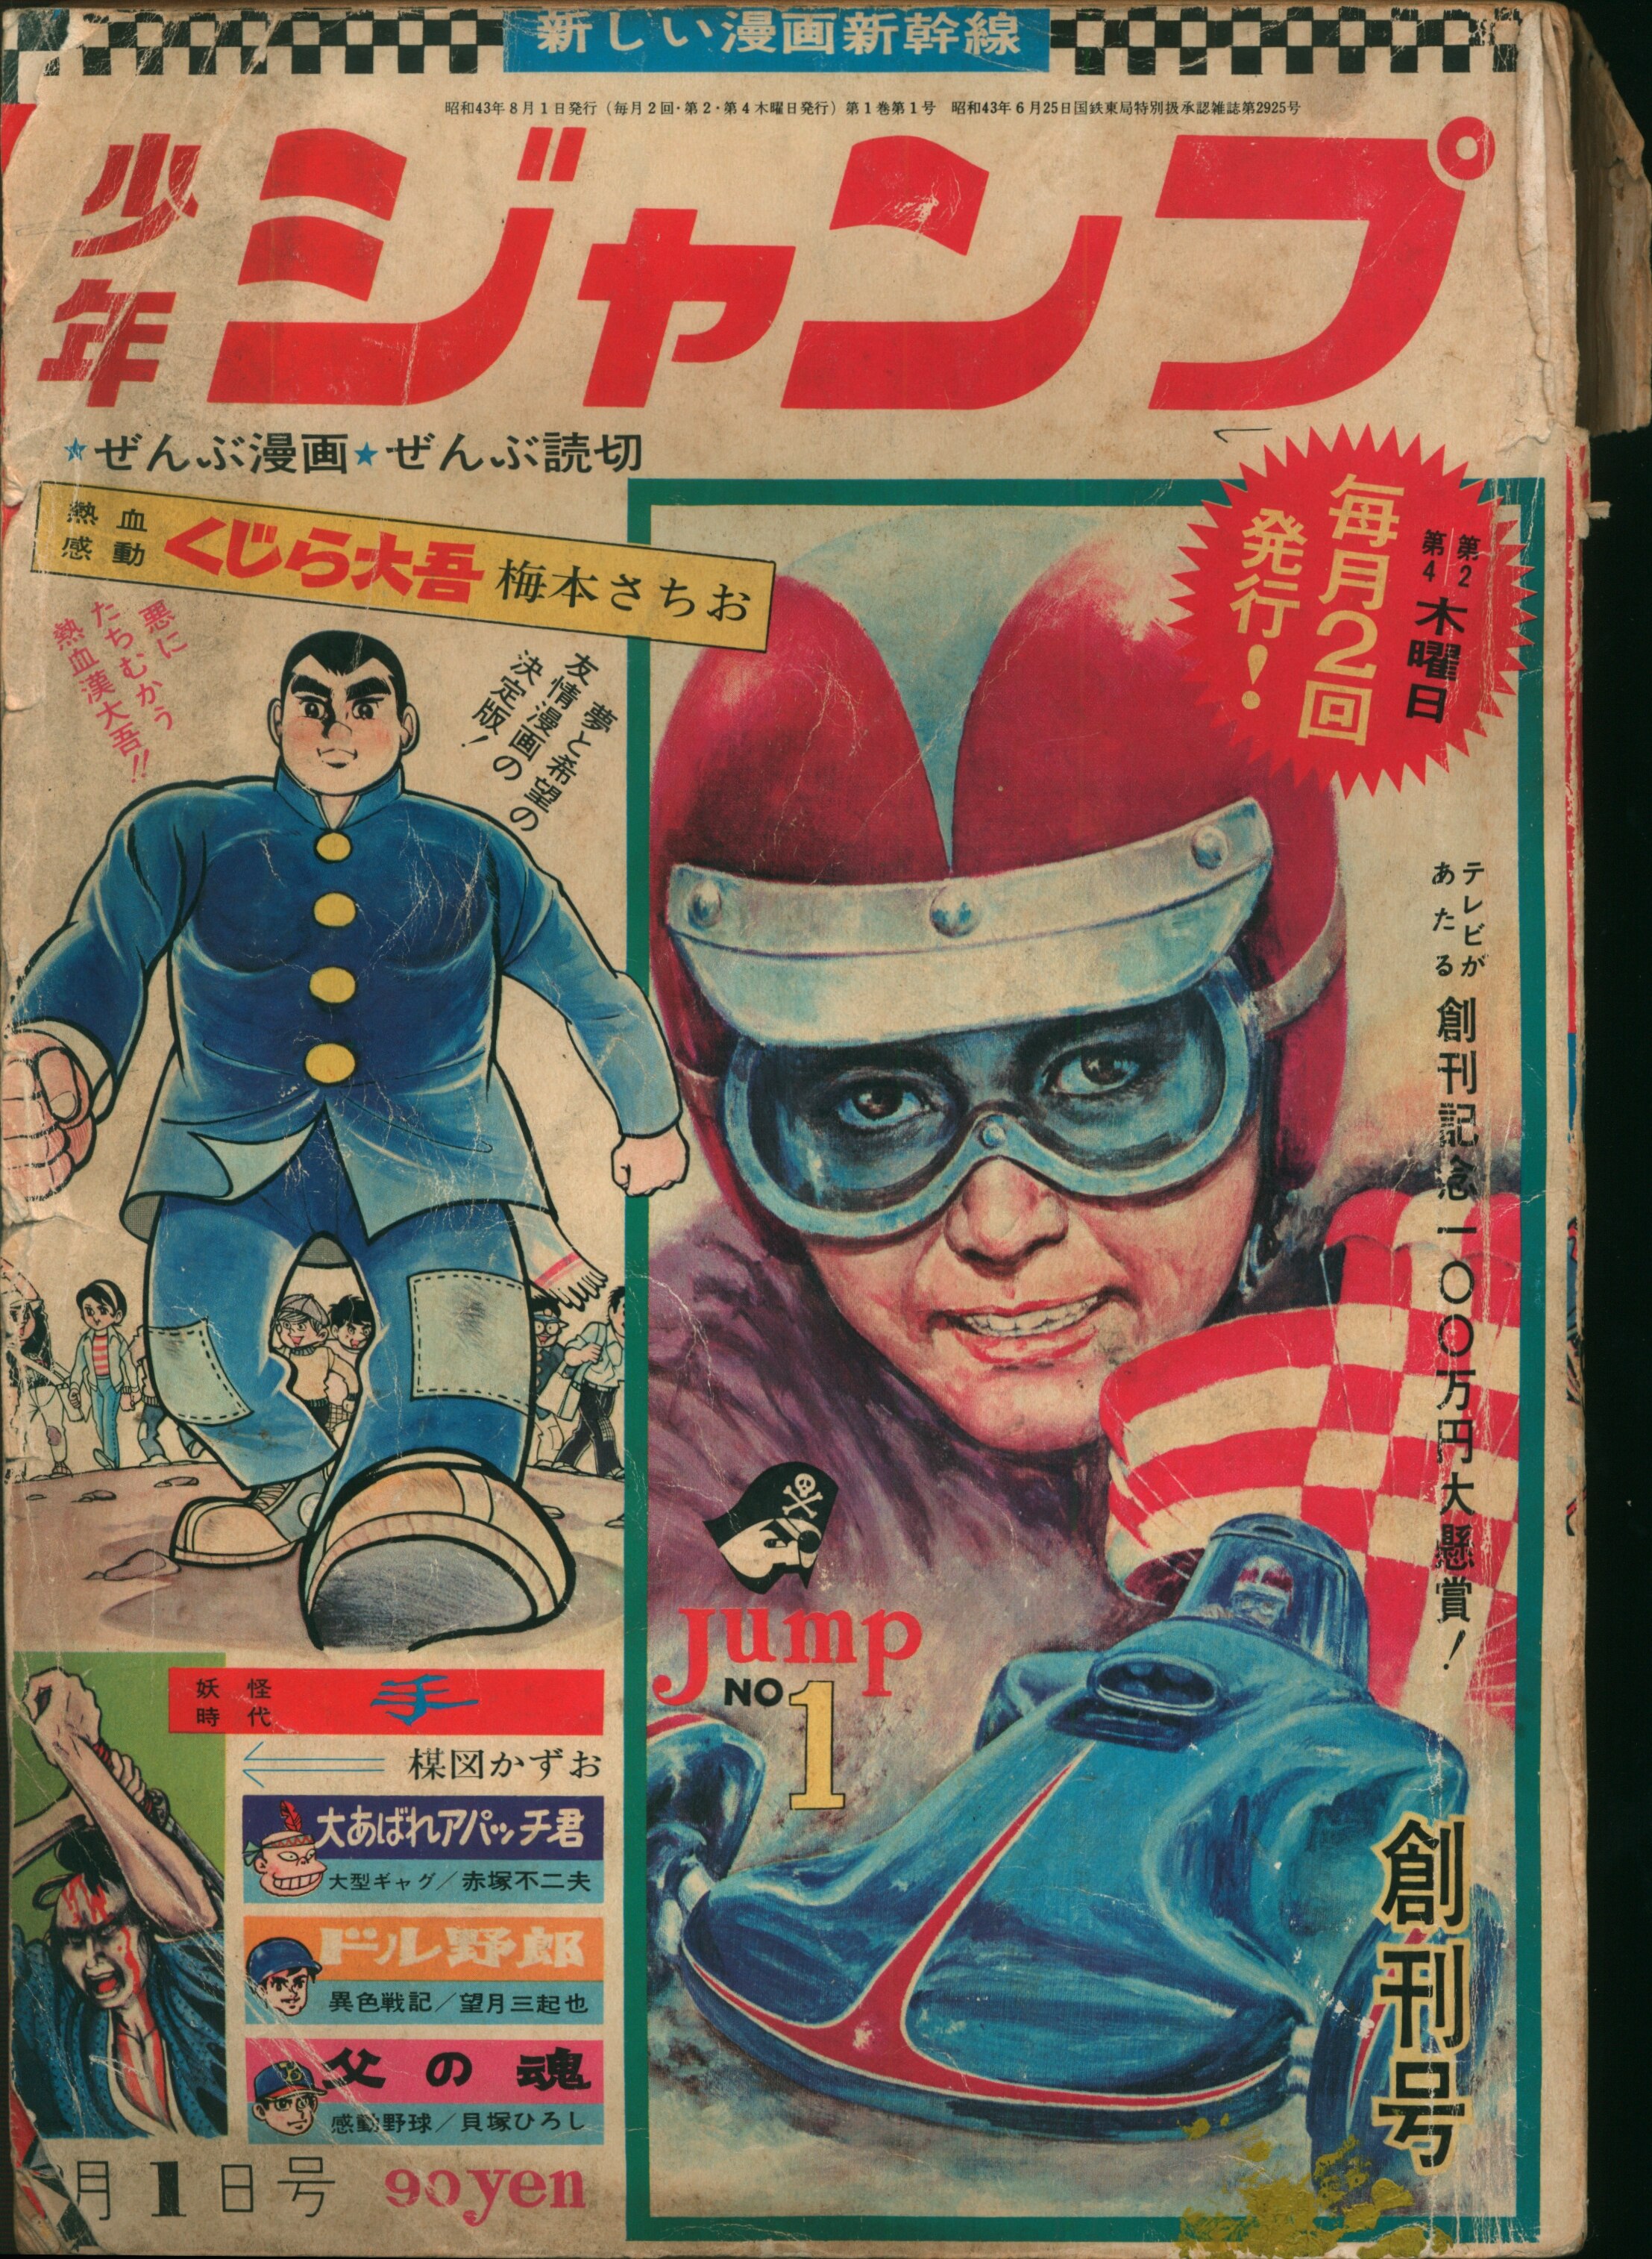 集英社 1968年(昭和43年)の漫画雑誌 週刊少年ジャンプ 1968年(昭和43年